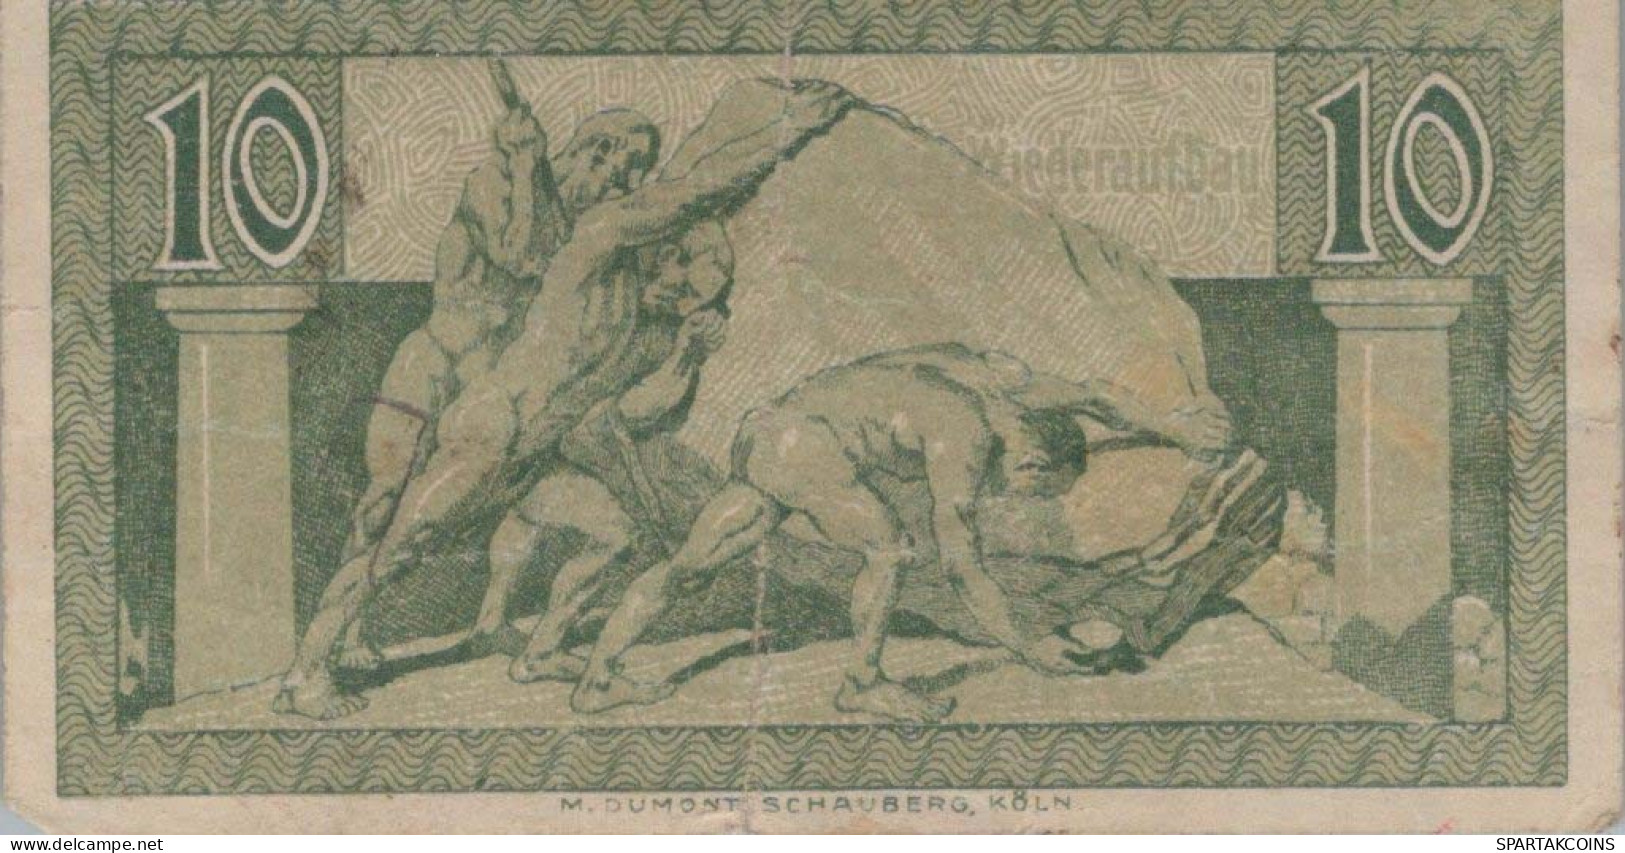 10 PFENNIG 1920 Stadt BONN AND SIEGKREIS Rhine DEUTSCHLAND Notgeld #PG499 - [11] Local Banknote Issues